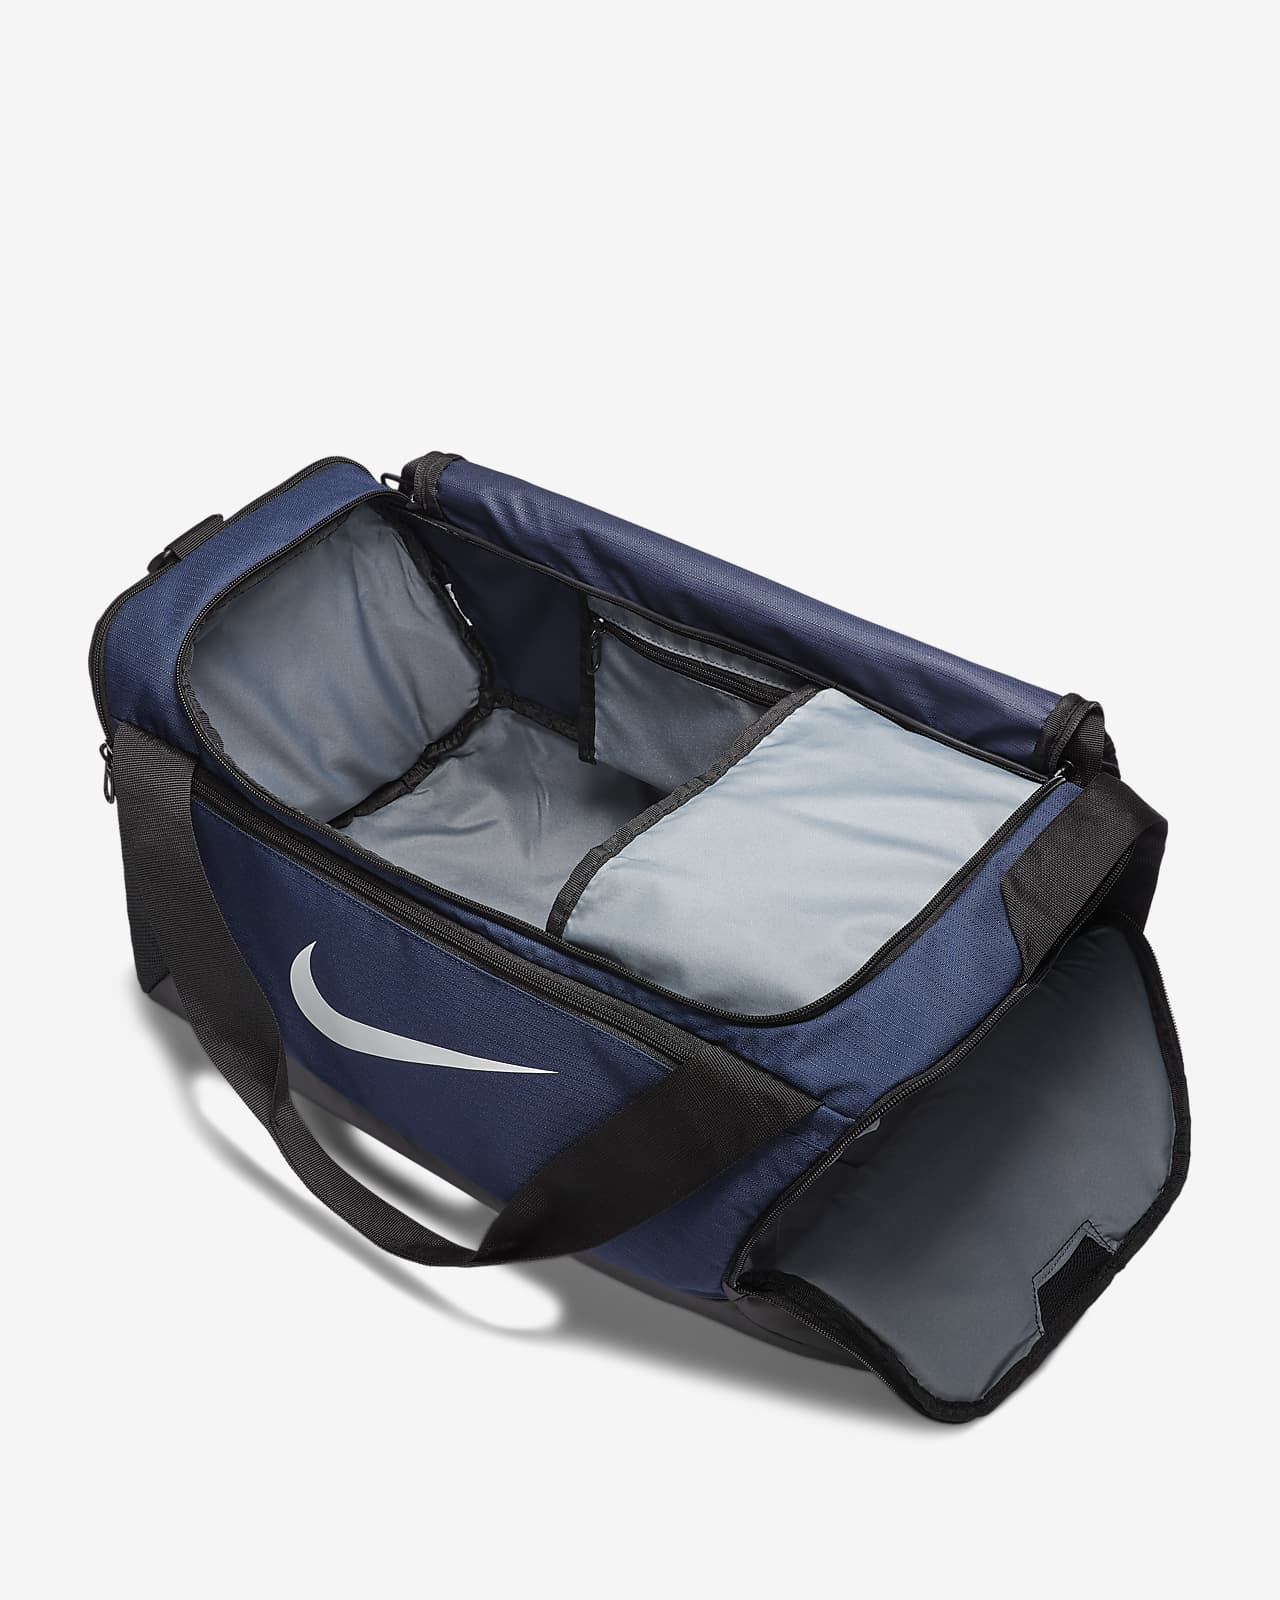 Nike Brasilia 6 Medium Duffle Bag,Navy,Medium